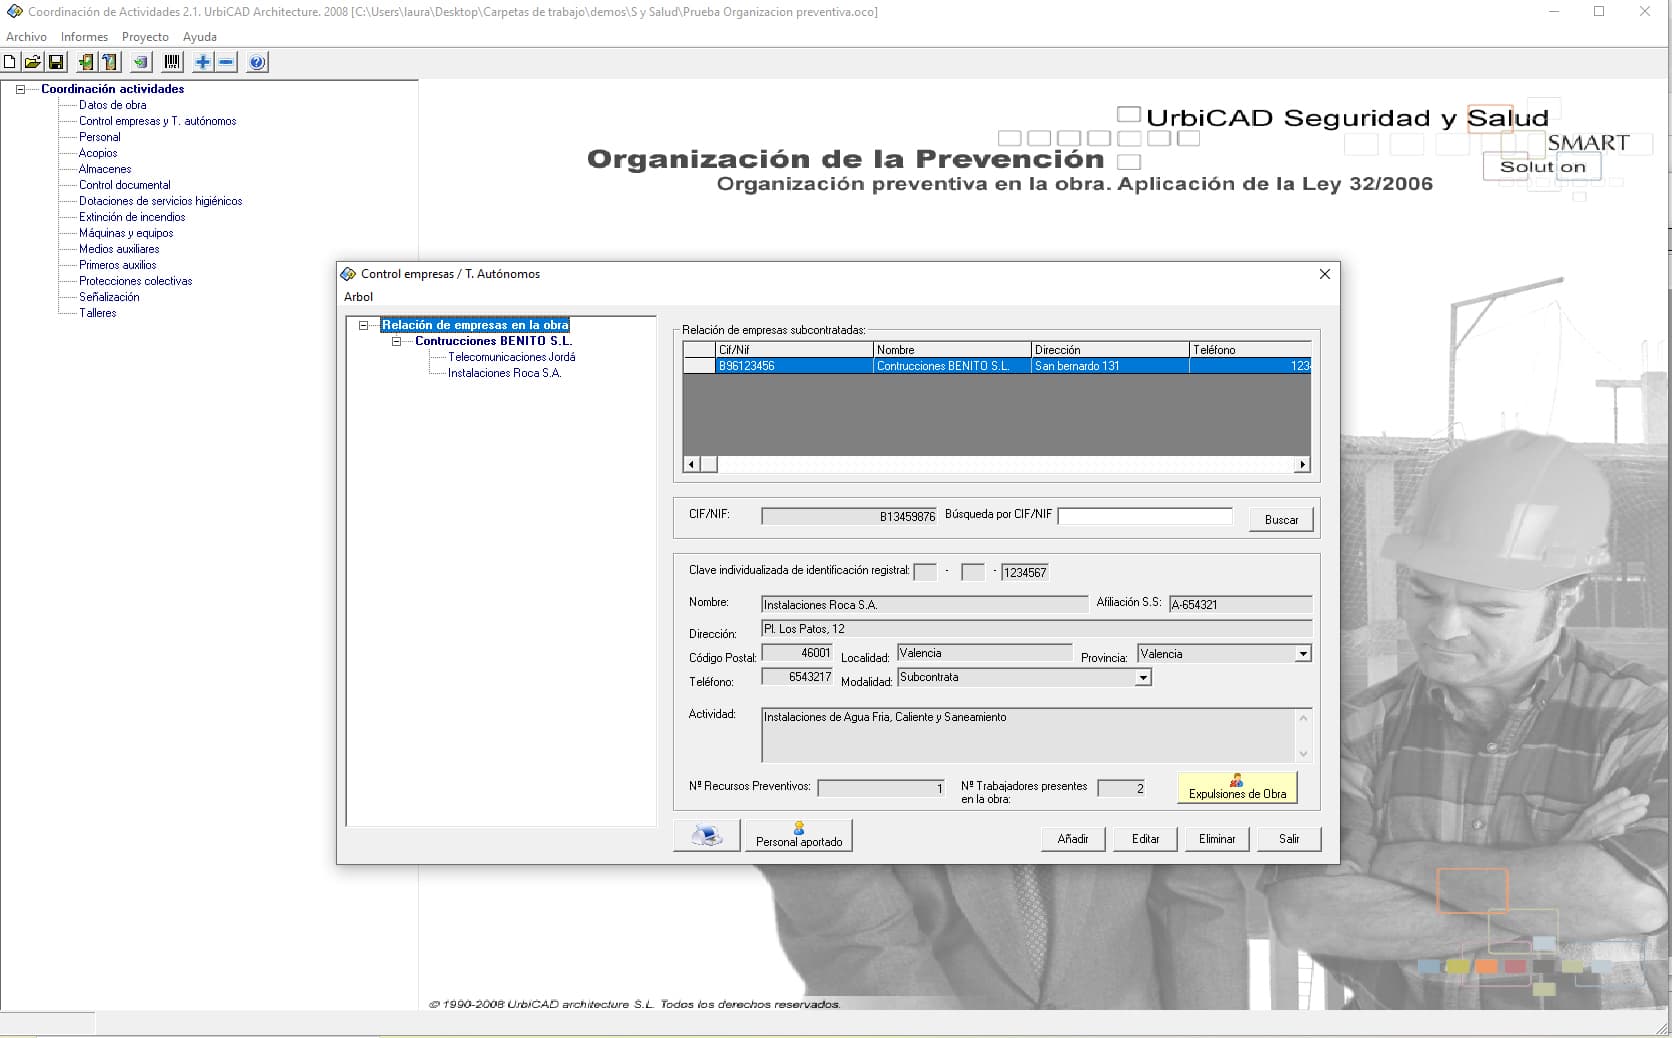 Captura del programa para Jefes de Obra: Árbol de contenidos y ventana del Control de Empresas y Autónomos